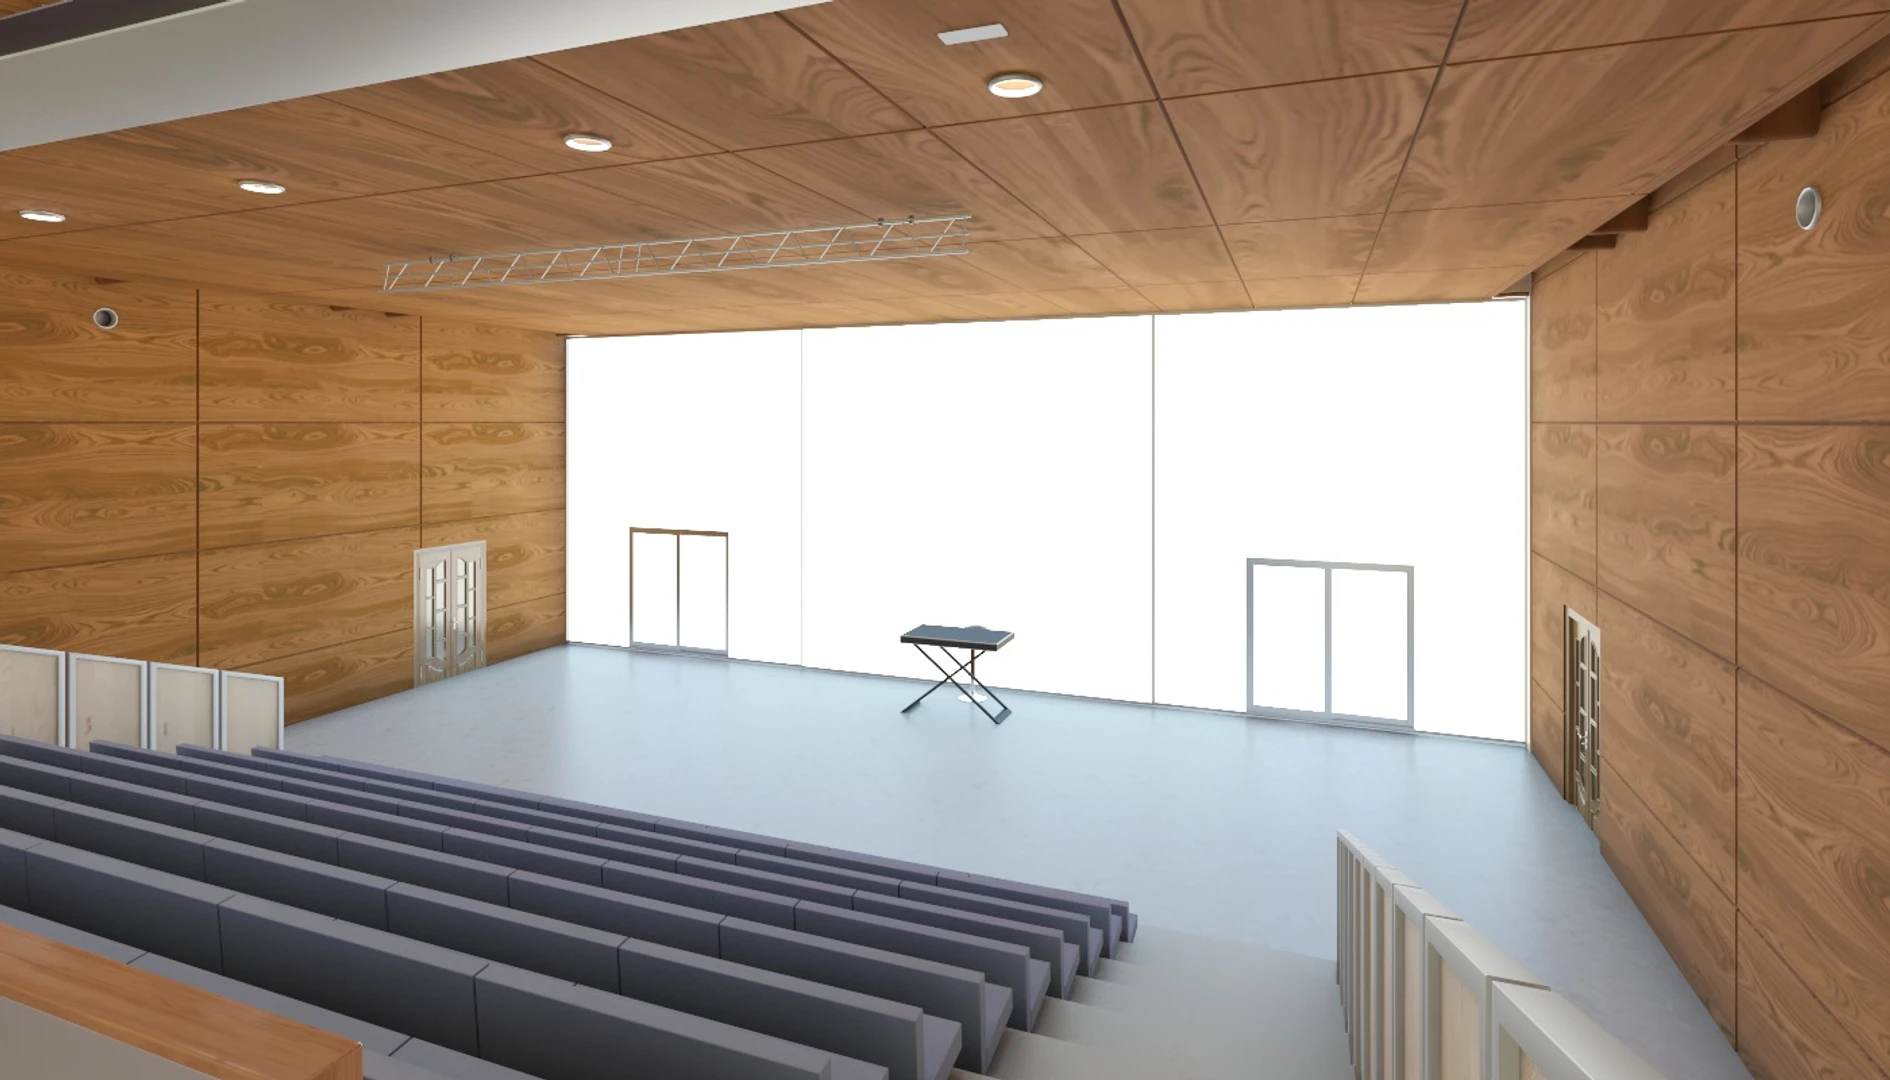 Truffaut Multi-Purpose Hall Theater Interior Scene 3D Model_06